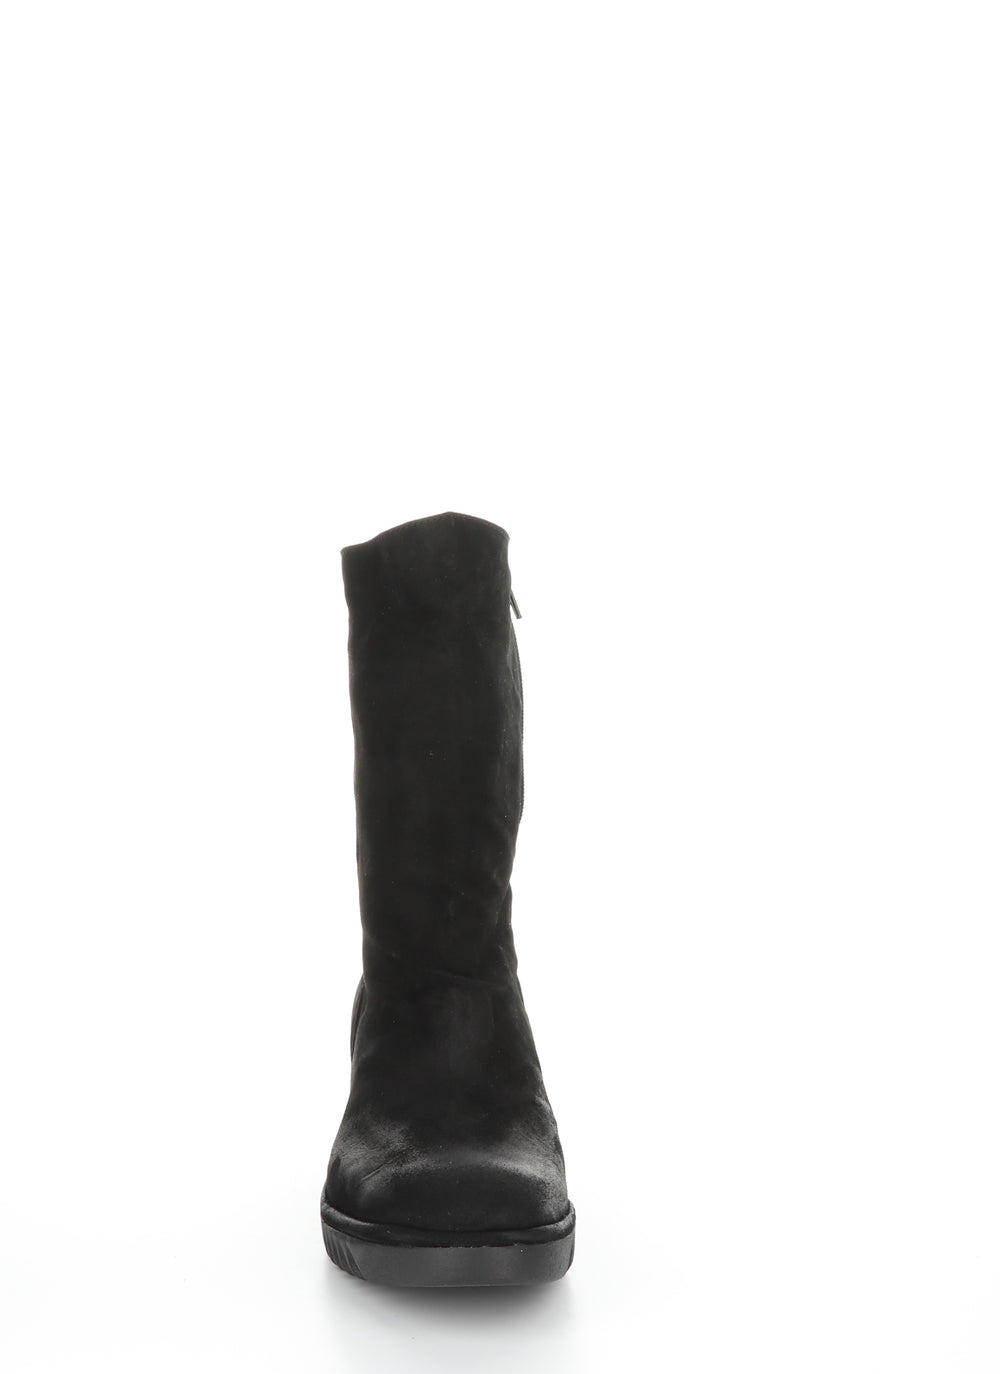 LEDE228FLY Black Zip Up Boots